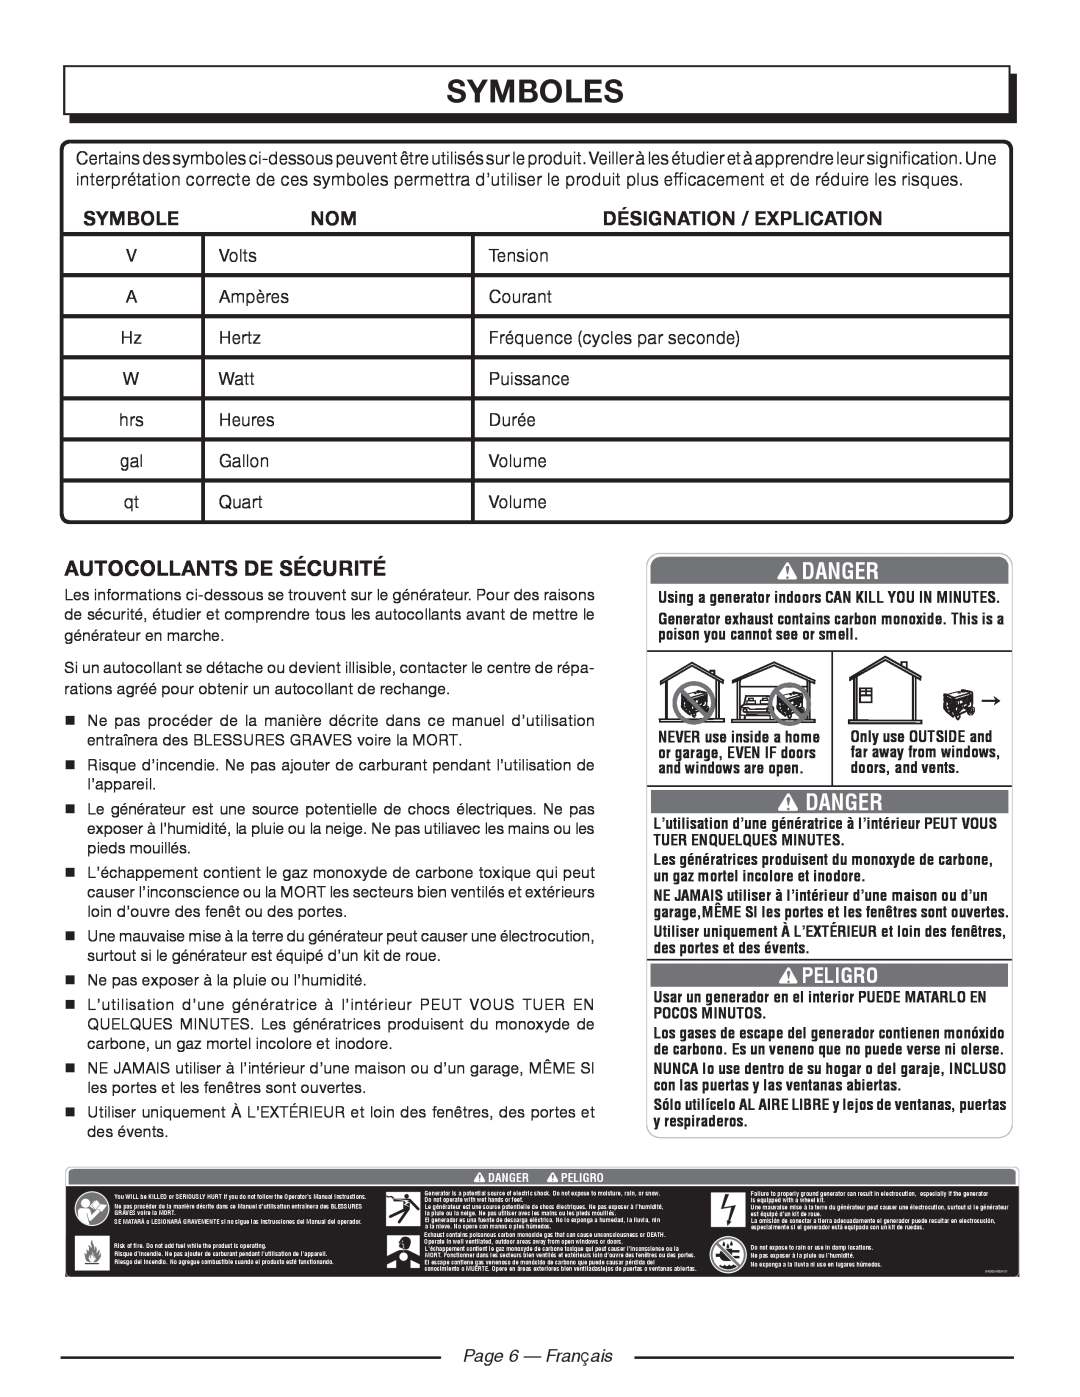 Homelite HGCA1400 Symboles, Danger, Autocollants De Sécurité, Peligro, Désignation / Explication, Page 6 - Français 